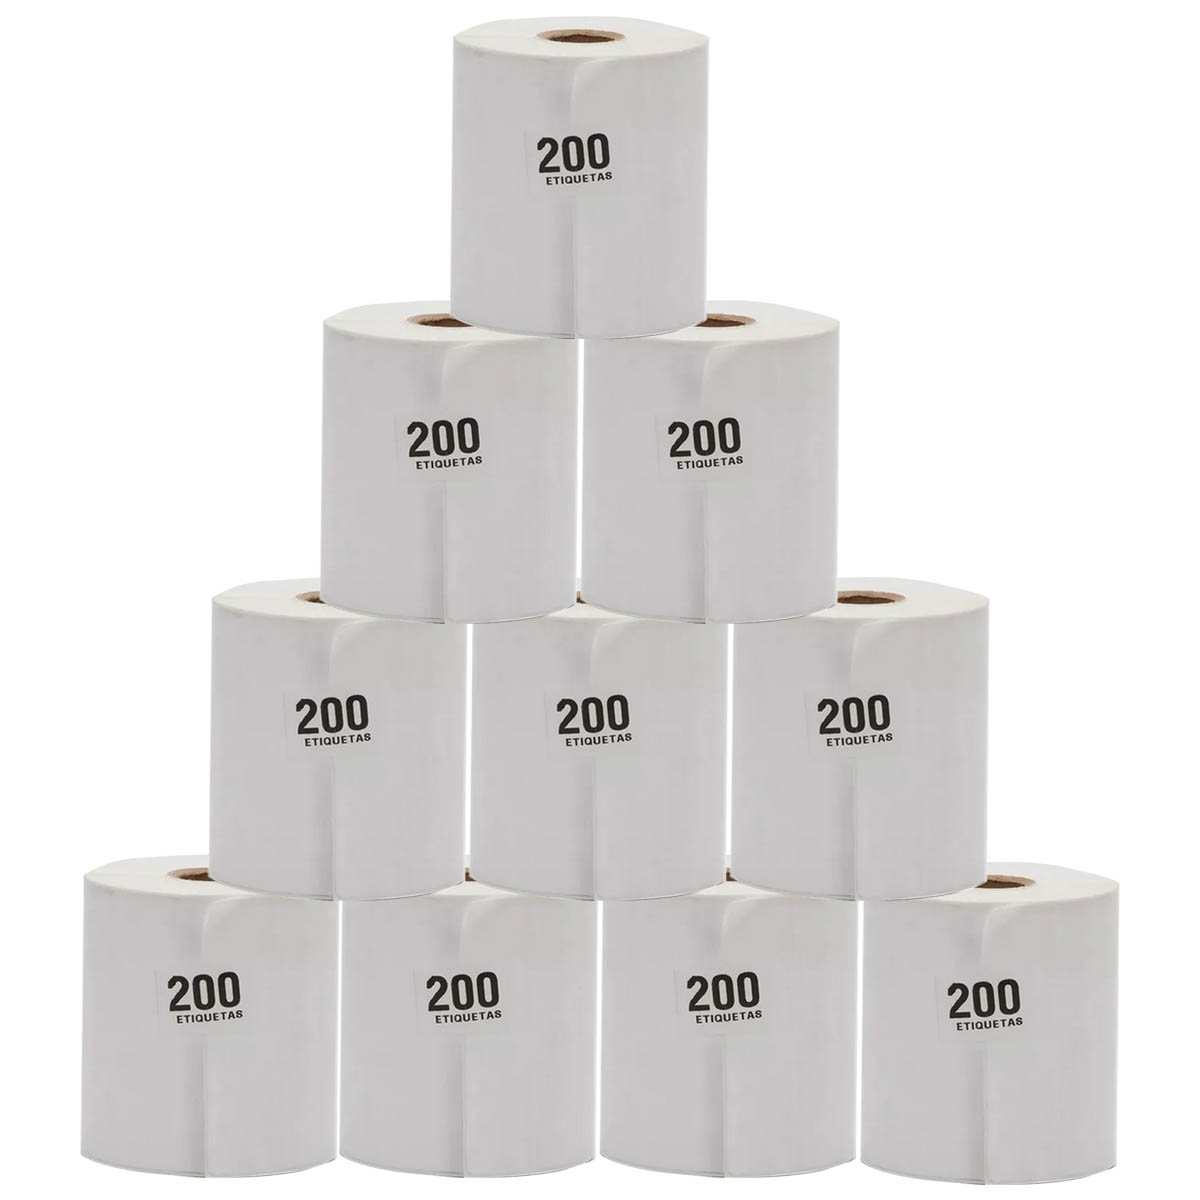 1000 directas etiquetas autoadhesivas para direcciones HotLabel Etiquetas térmicas de 10 x 15 cm para envío papel térmico 4 × 6 etiquetas DHL 